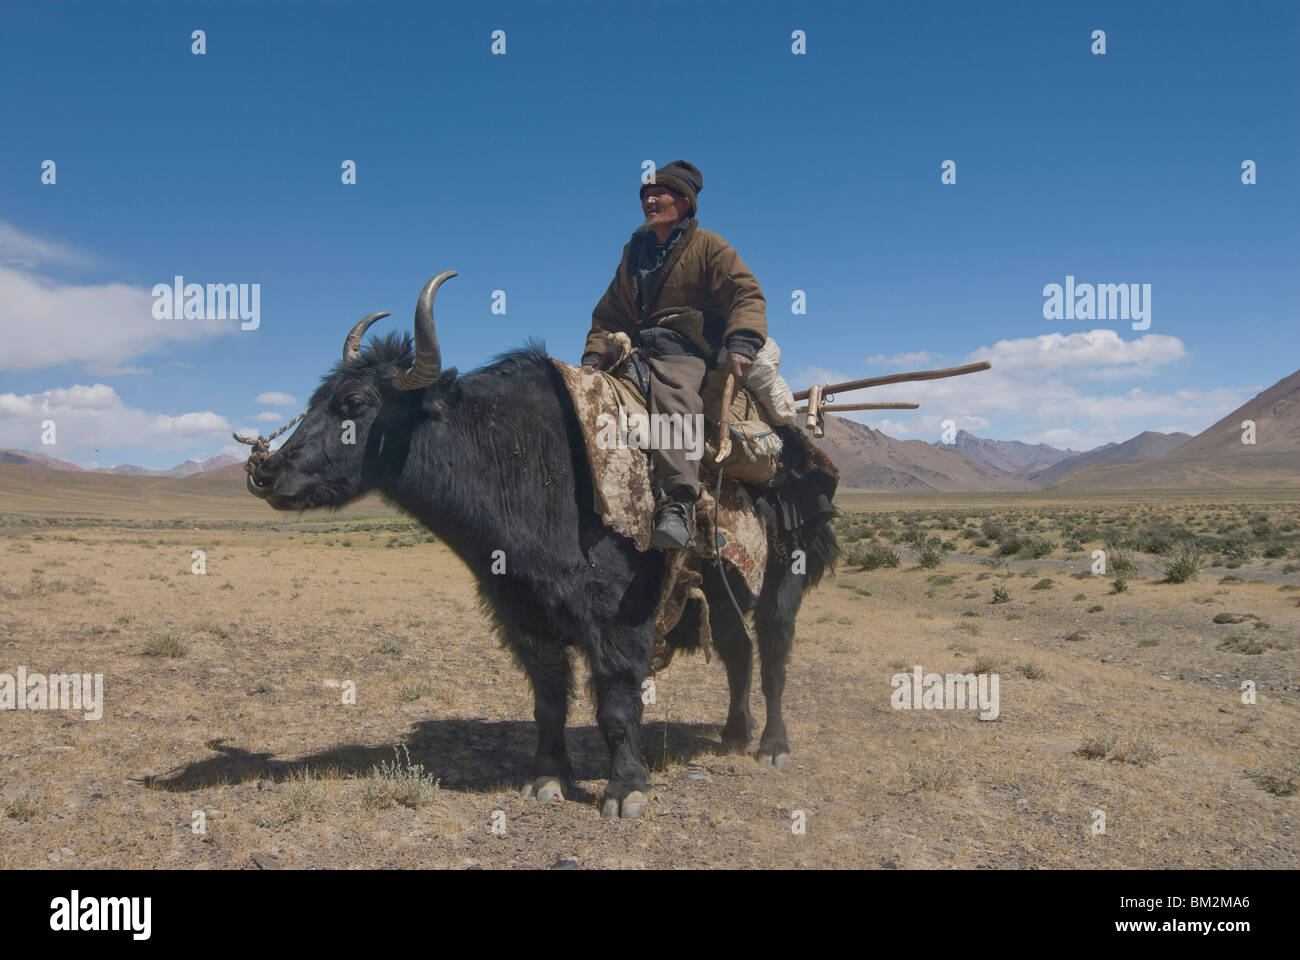 El viejo caballo sobre su yak, el Pamir, Tayikistán Foto de stock